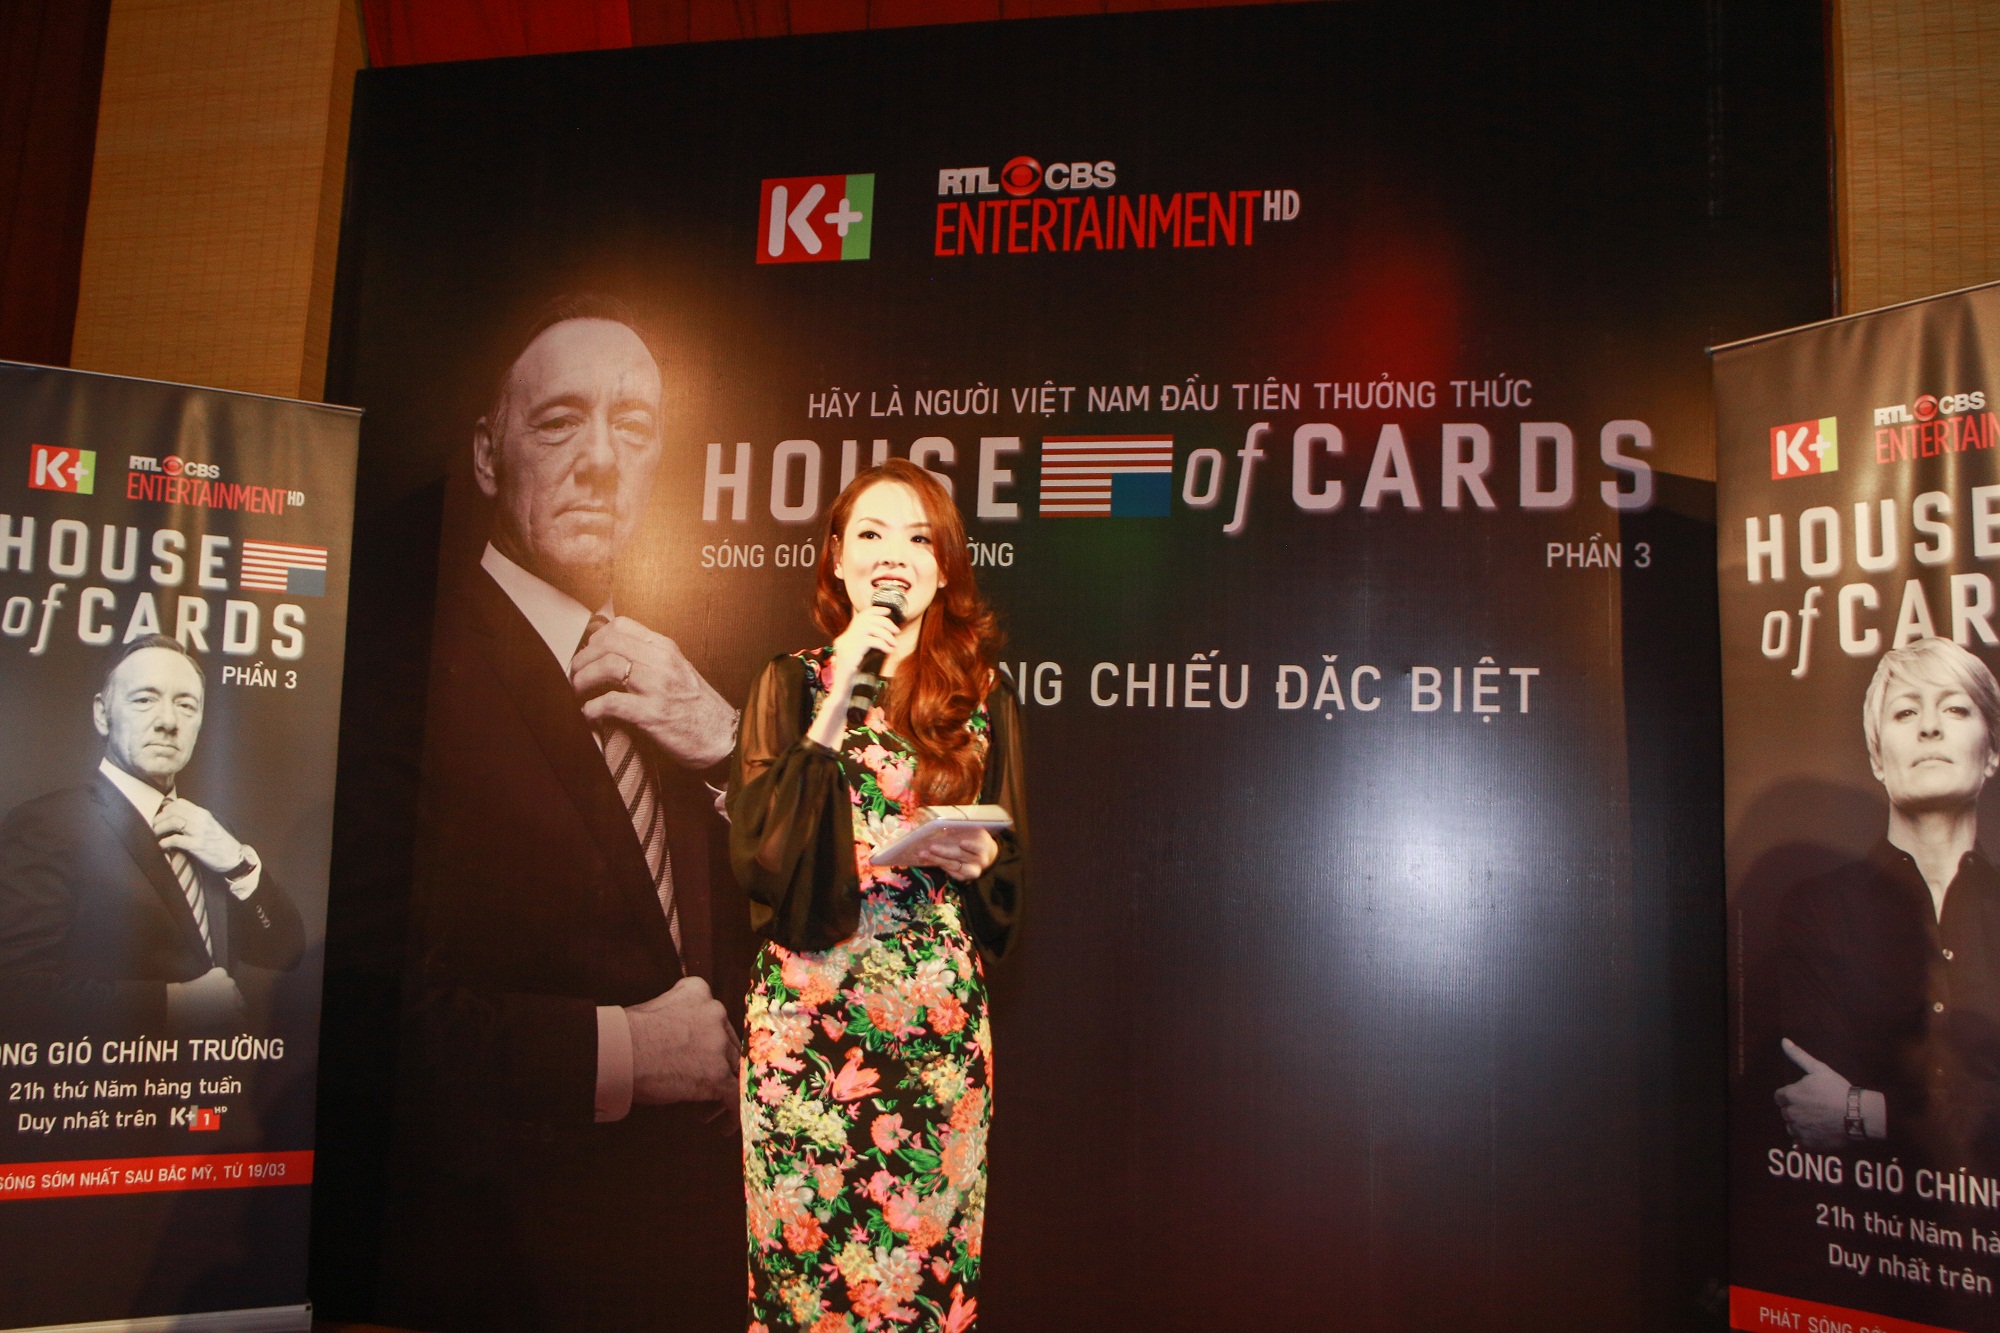 Lễ công chiếu phim Sóng gió chính trường (House of cards) trên K+ 